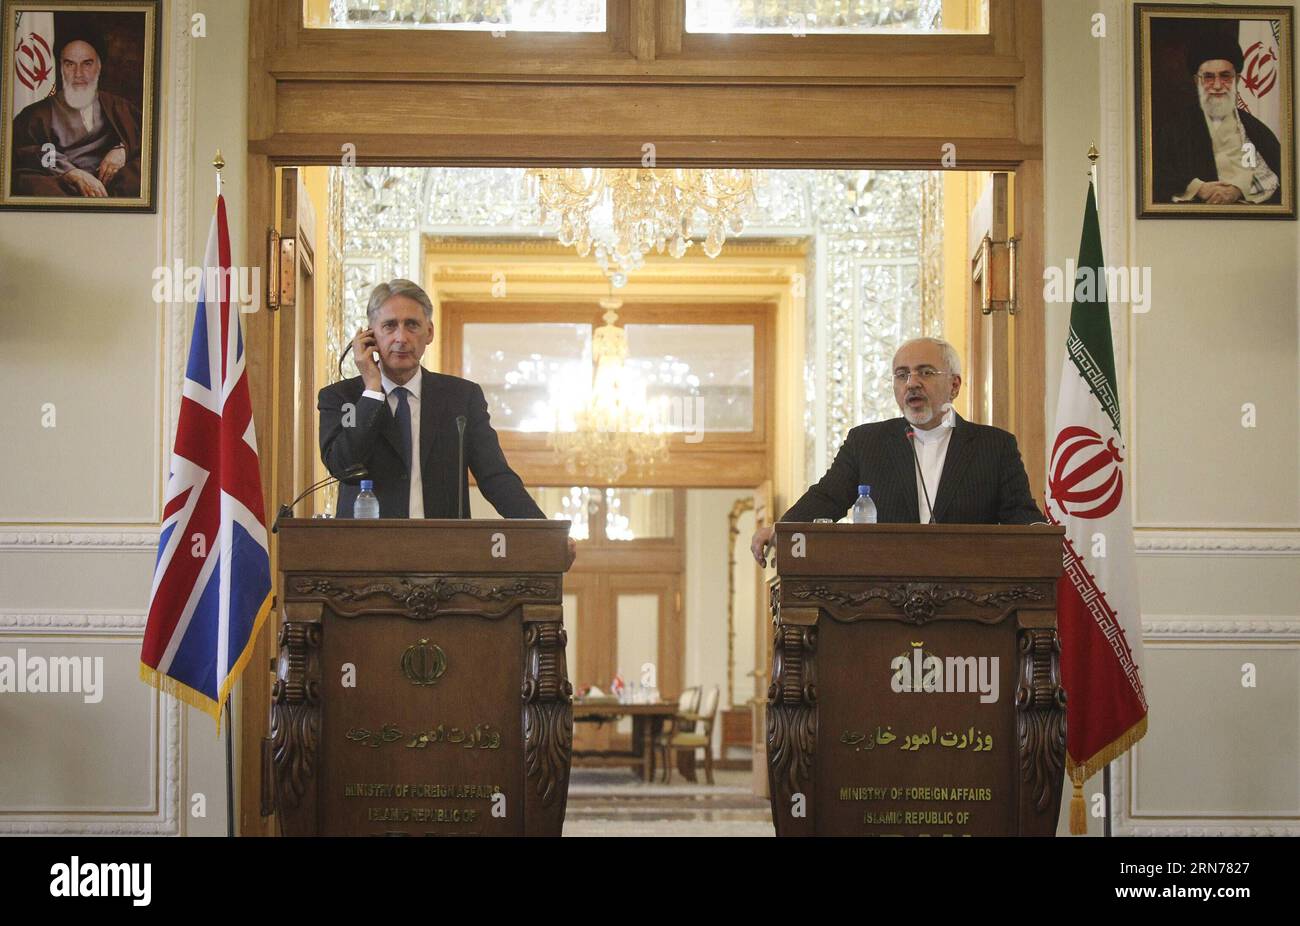 (150824) -- TEHERAN, 23. August 2015 -- der iranische Außenminister Mohammad-Javad Zarif (R) und sein britischer Amtskollege Philip Hammond nahmen am 23. August 2015 an einer gemeinsamen Pressekonferenz in Teheran (Iran) Teil. Die Botschaften in Teheran und London werden auf der Ebene der Affären wieder eröffnet, was ein neuer Anfang für die Beziehungen zwischen dem Iran und Großbritannien sein wird, sagte der iranische Außenminister Mohammad-Javad Zarif auf einer gemeinsamen Pressekonferenz mit seinem britischen Amtskollegen Philip Hammond. )(zhf) IRAN-TEHERAN-BRITAIN-FM-MEETING AhmadxHalabisaz PUBLICATIONxNOTxINxCHN 150824 TEHERAN 23. August 2015 I Stockfoto